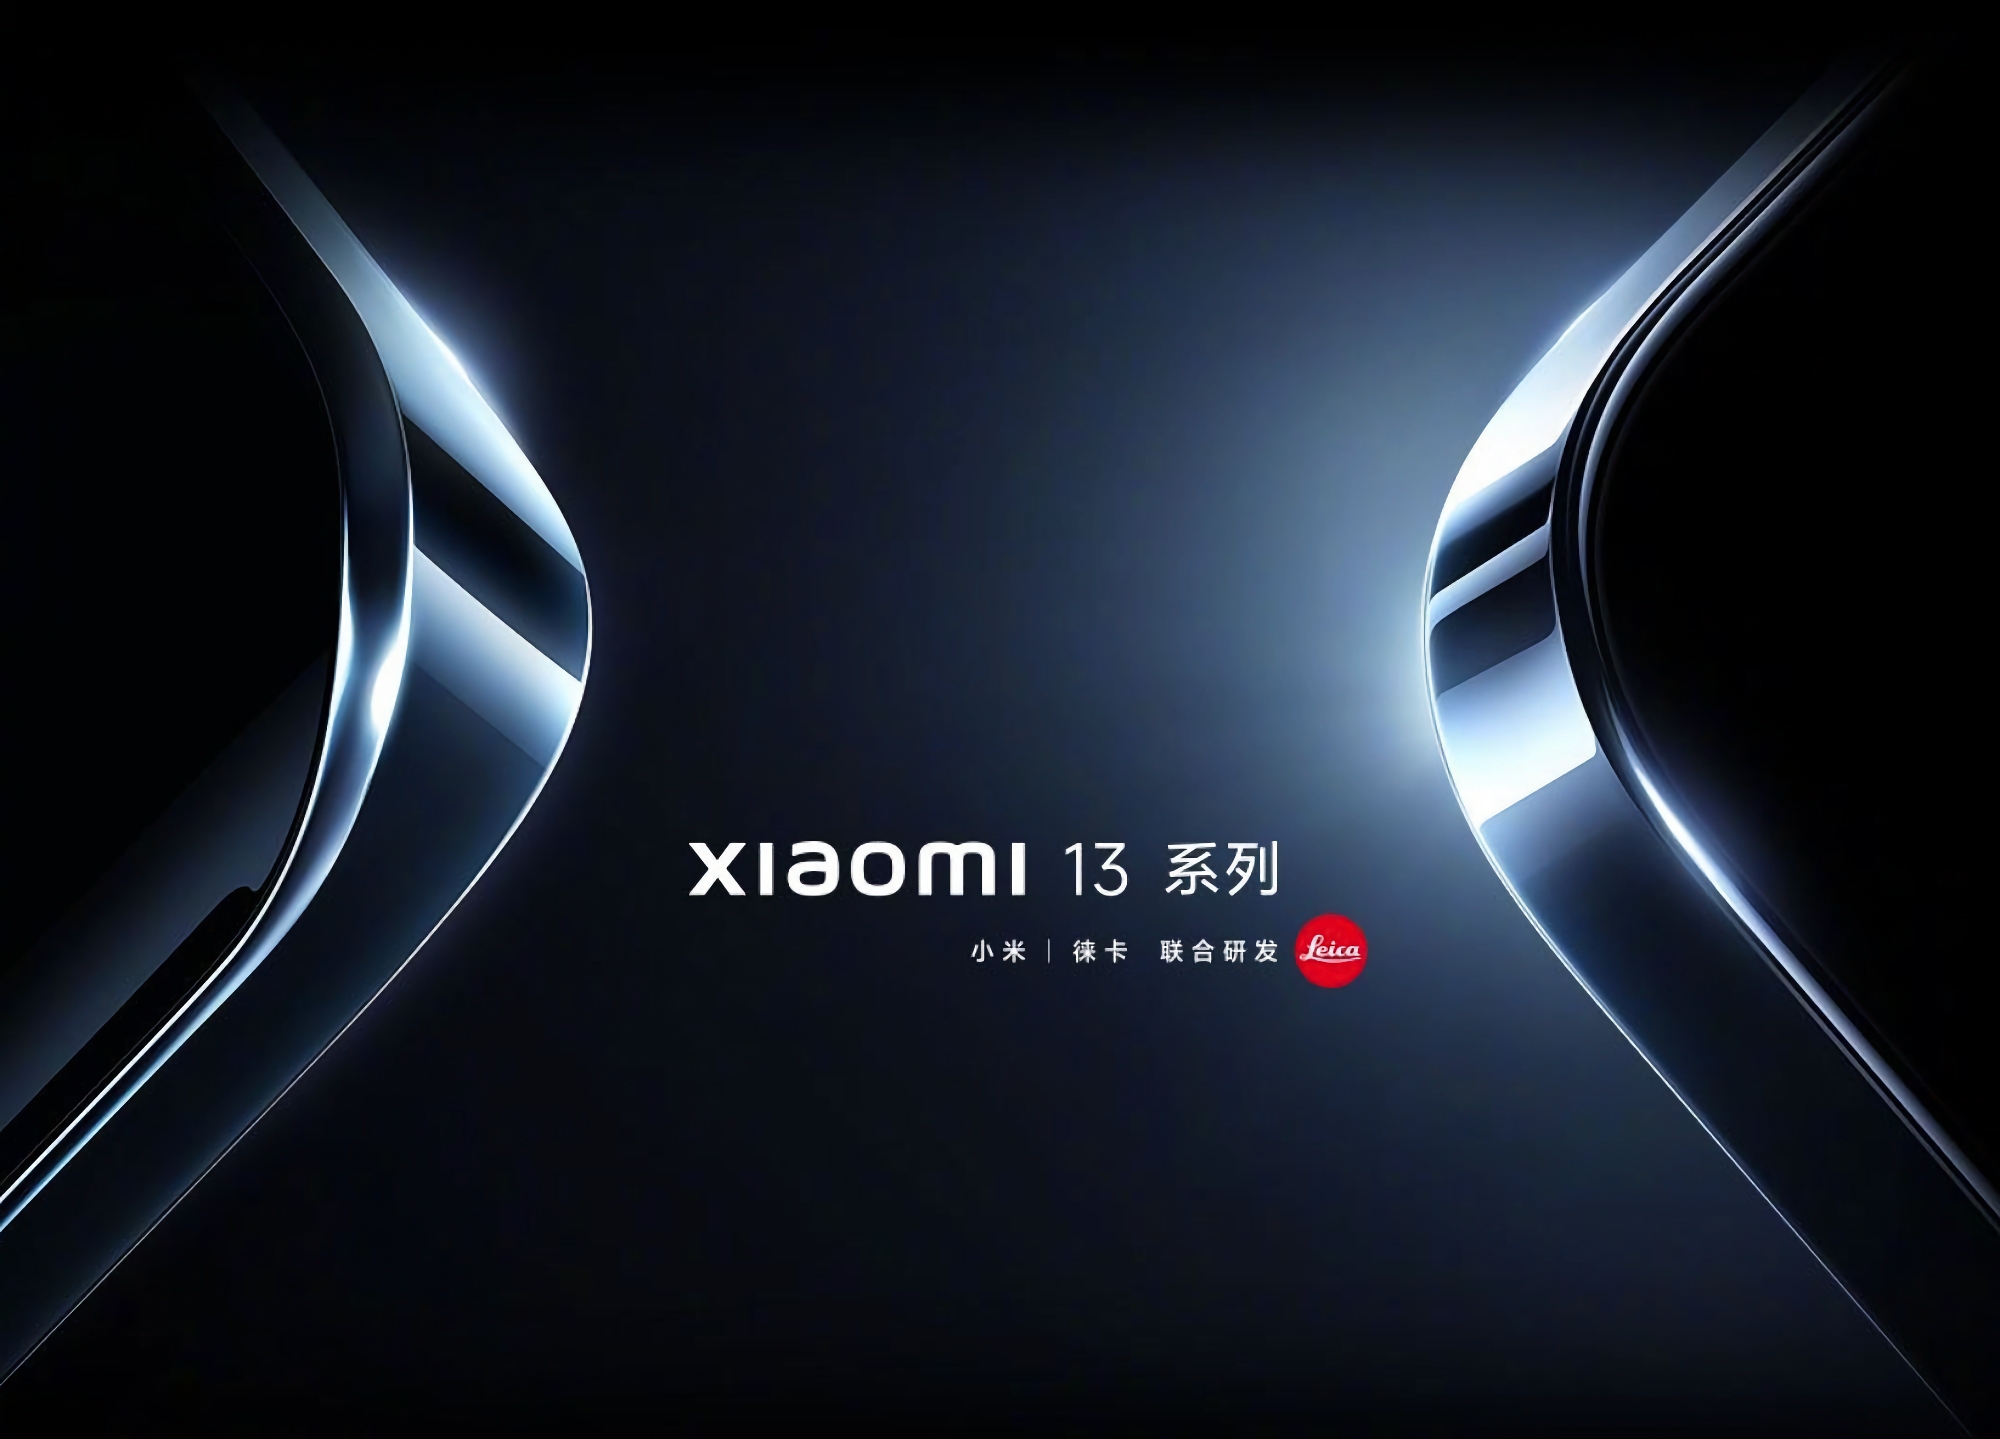 Xiaomi ha rinviato la presentazione dei modelli Xiaomi 13 e Xiaomi 13 Pro a causa della morte dell'ex leader cinese Jiang Zemin.